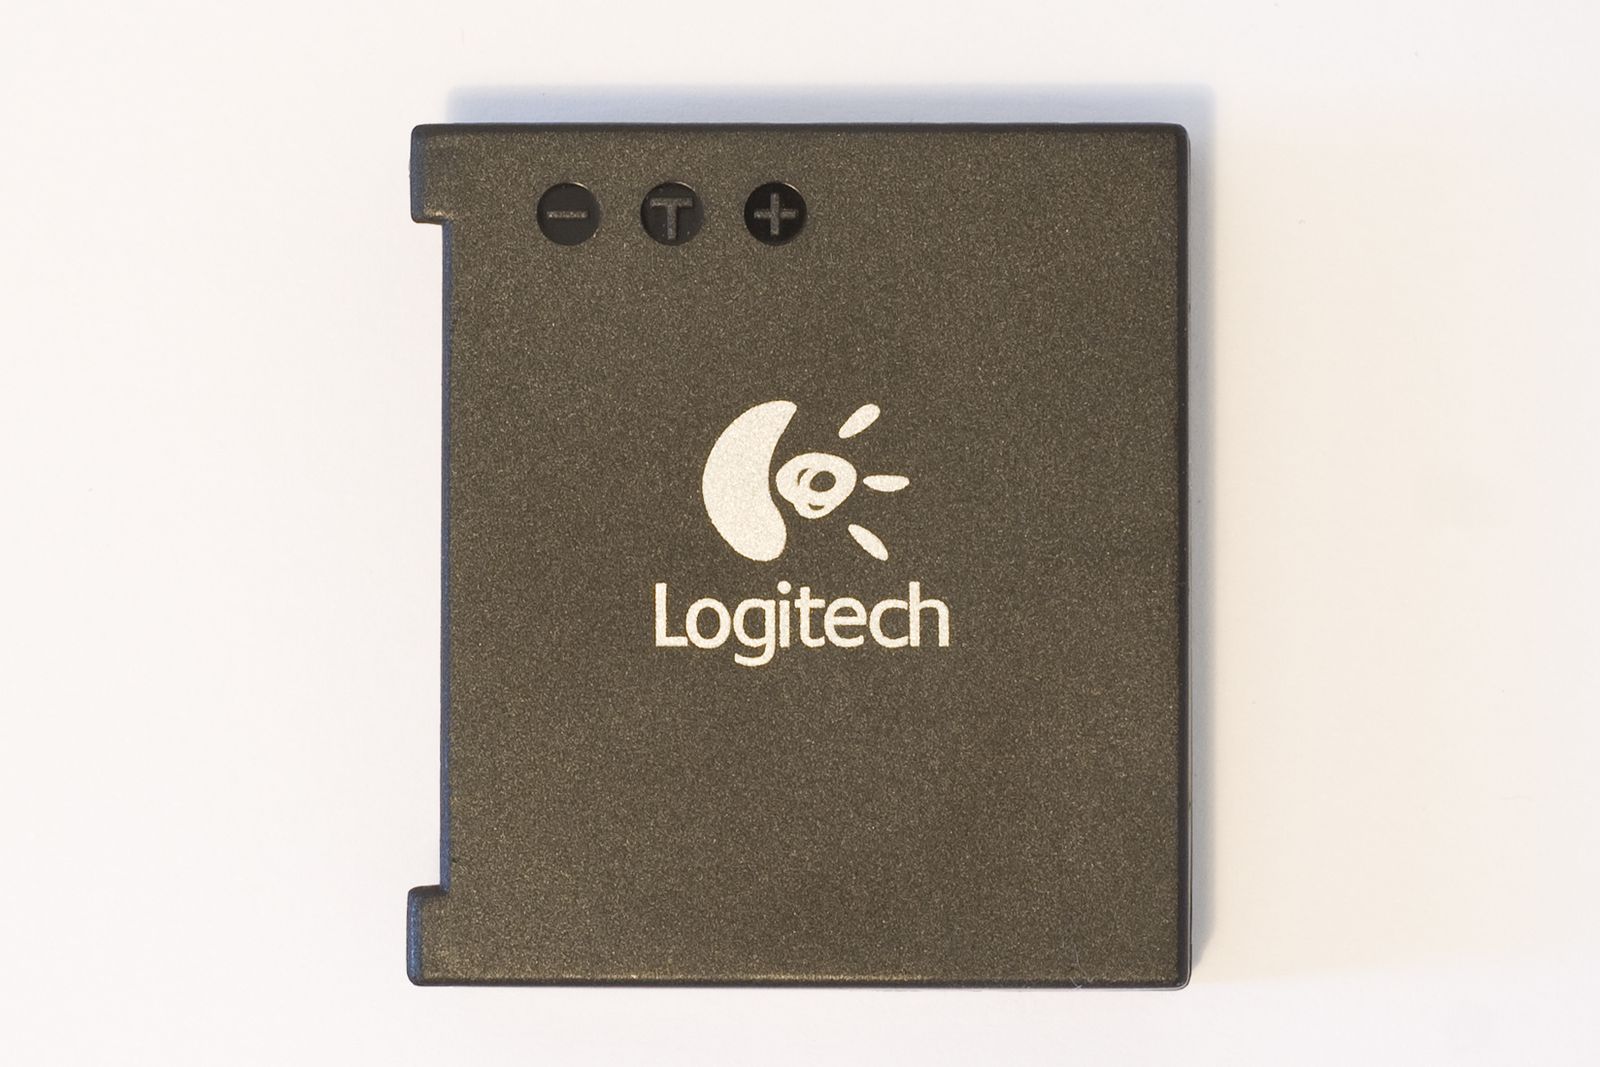 Une souris laser sans fil: Logitech MX Revolution - le blog jmpcomputer